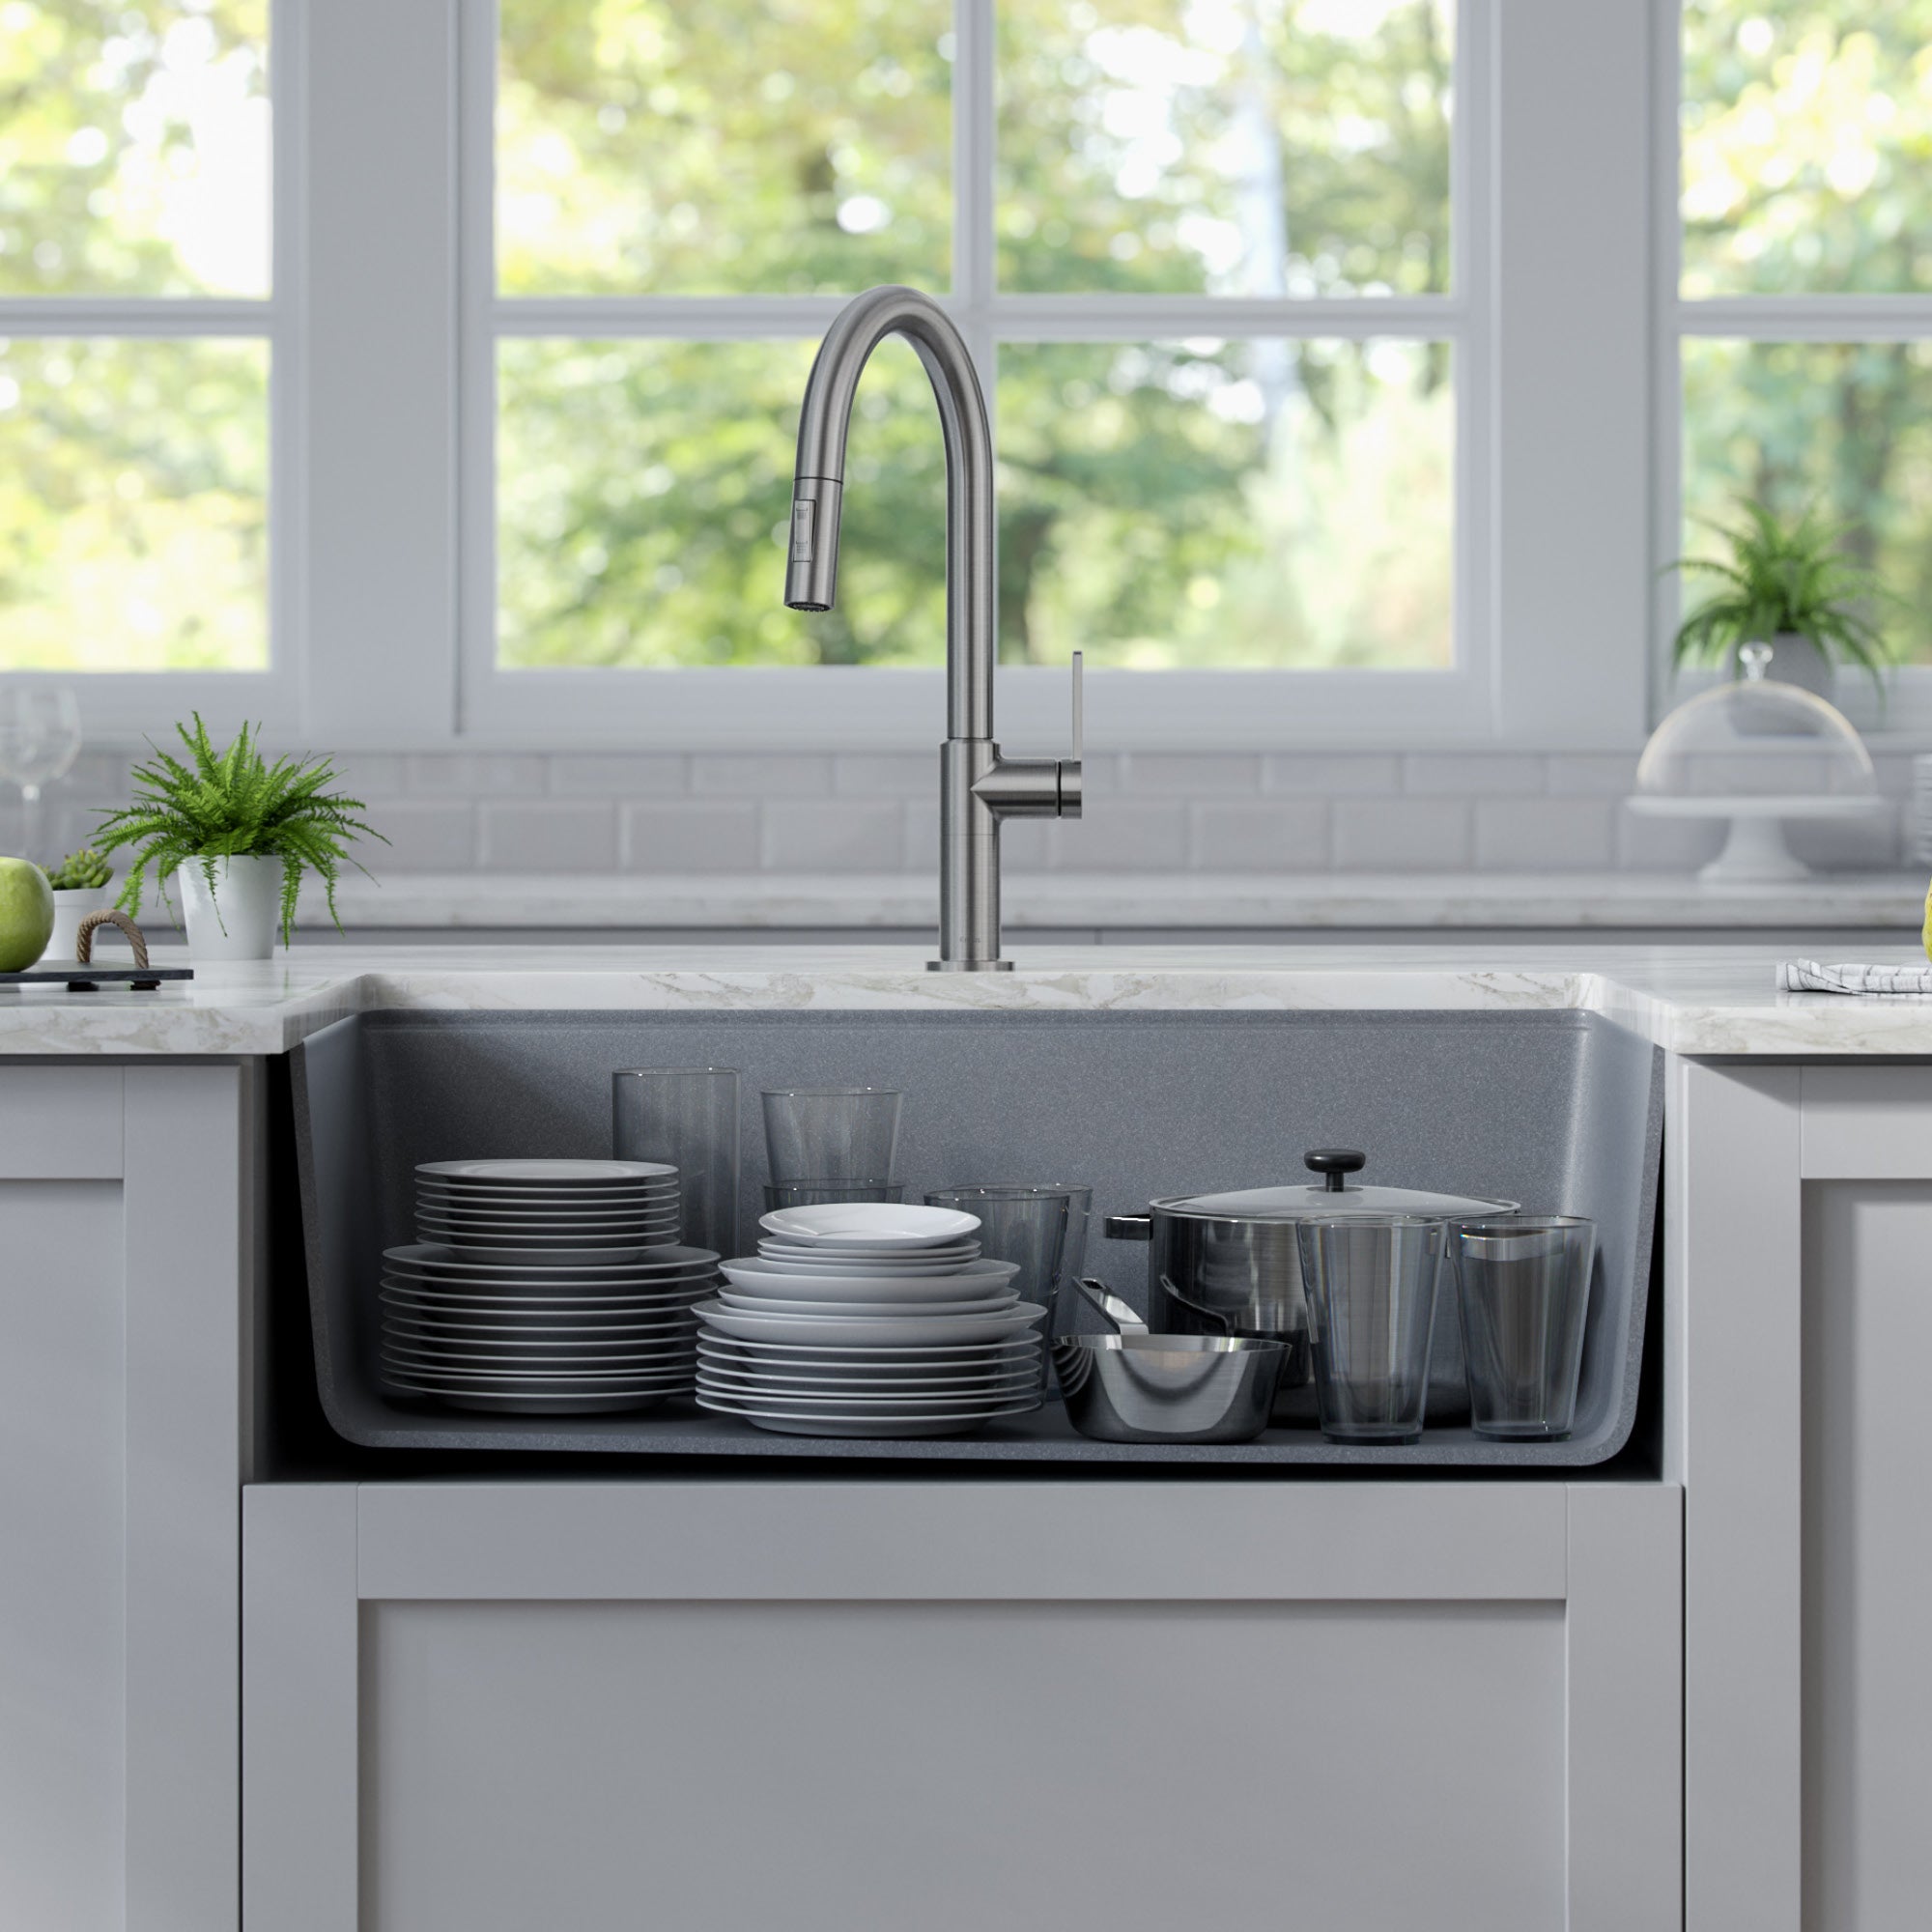 KRAUS Bellucci Workstation 33" Undermount Granite Composite Kitchen Sink in Metallic Gray with Accessories-Kitchen Sinks-DirectSinks